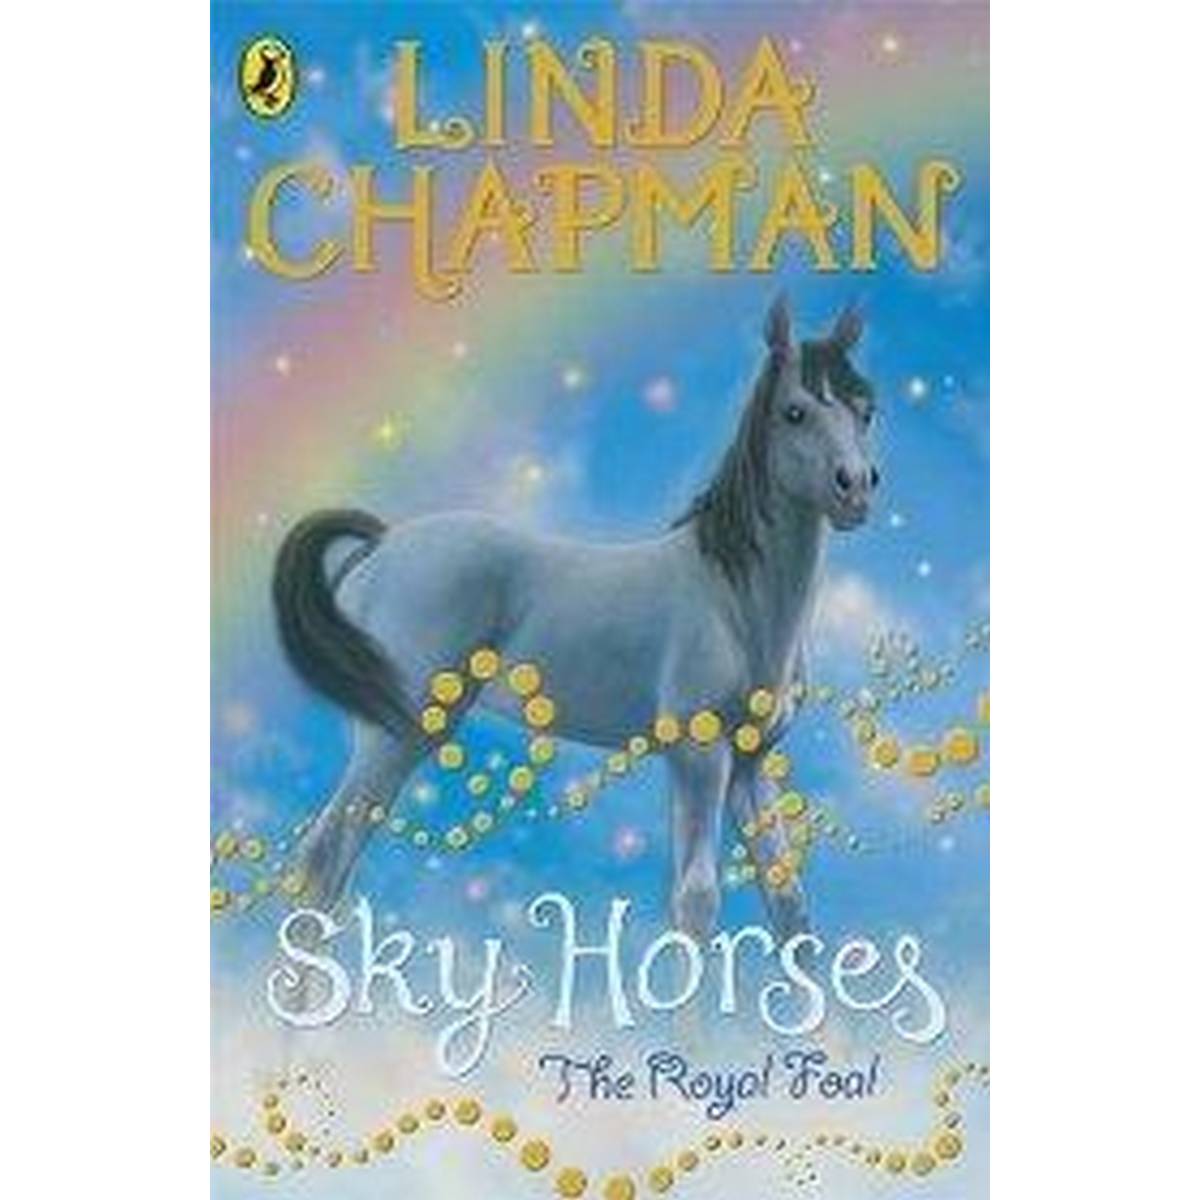 Sky Horses: The Royal Foal